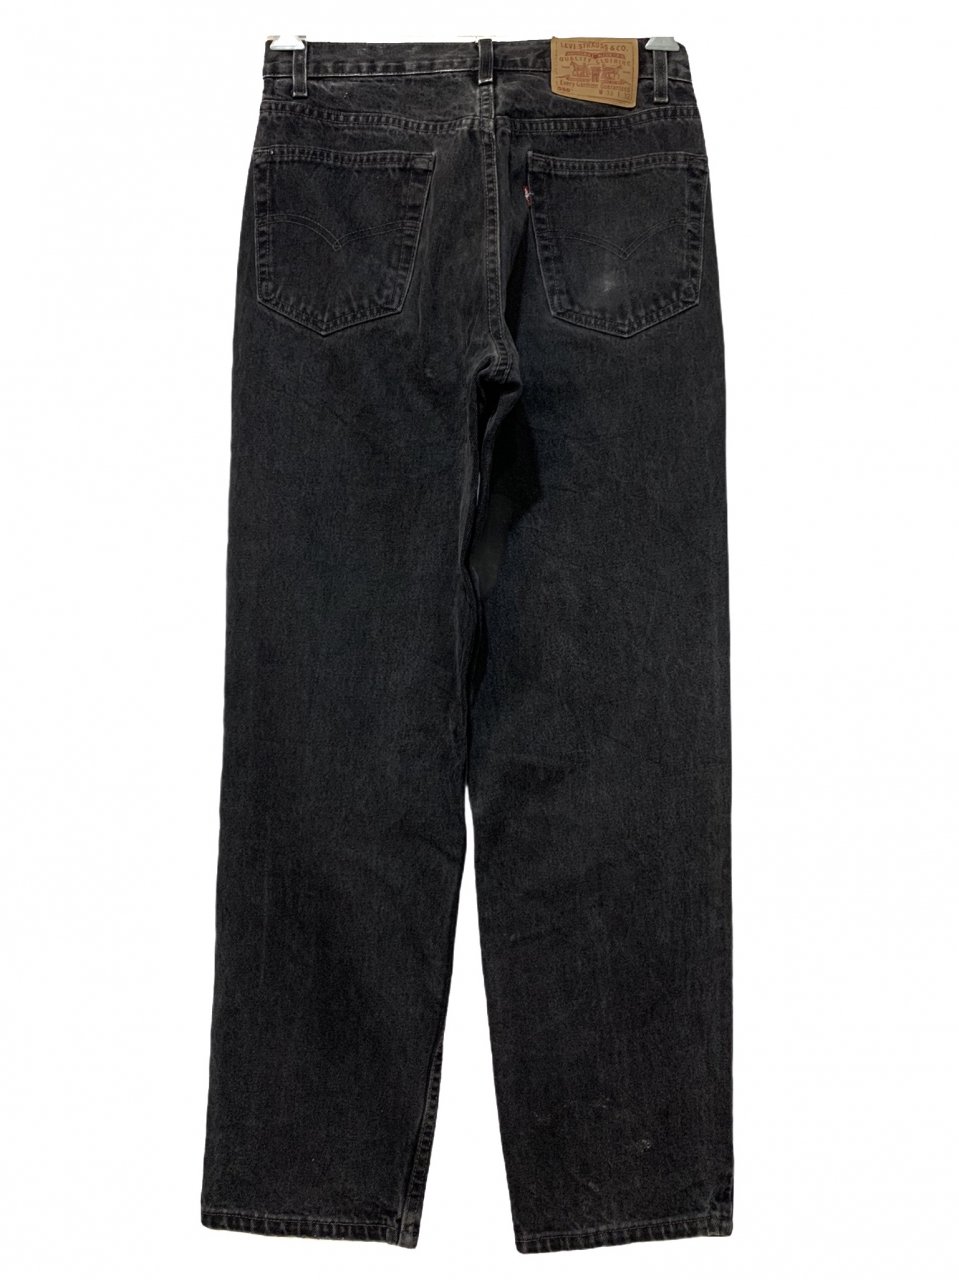 USA製 90s Levi's 550 Black Denim Pants 黒 W31×L31 リーバイス Levis 